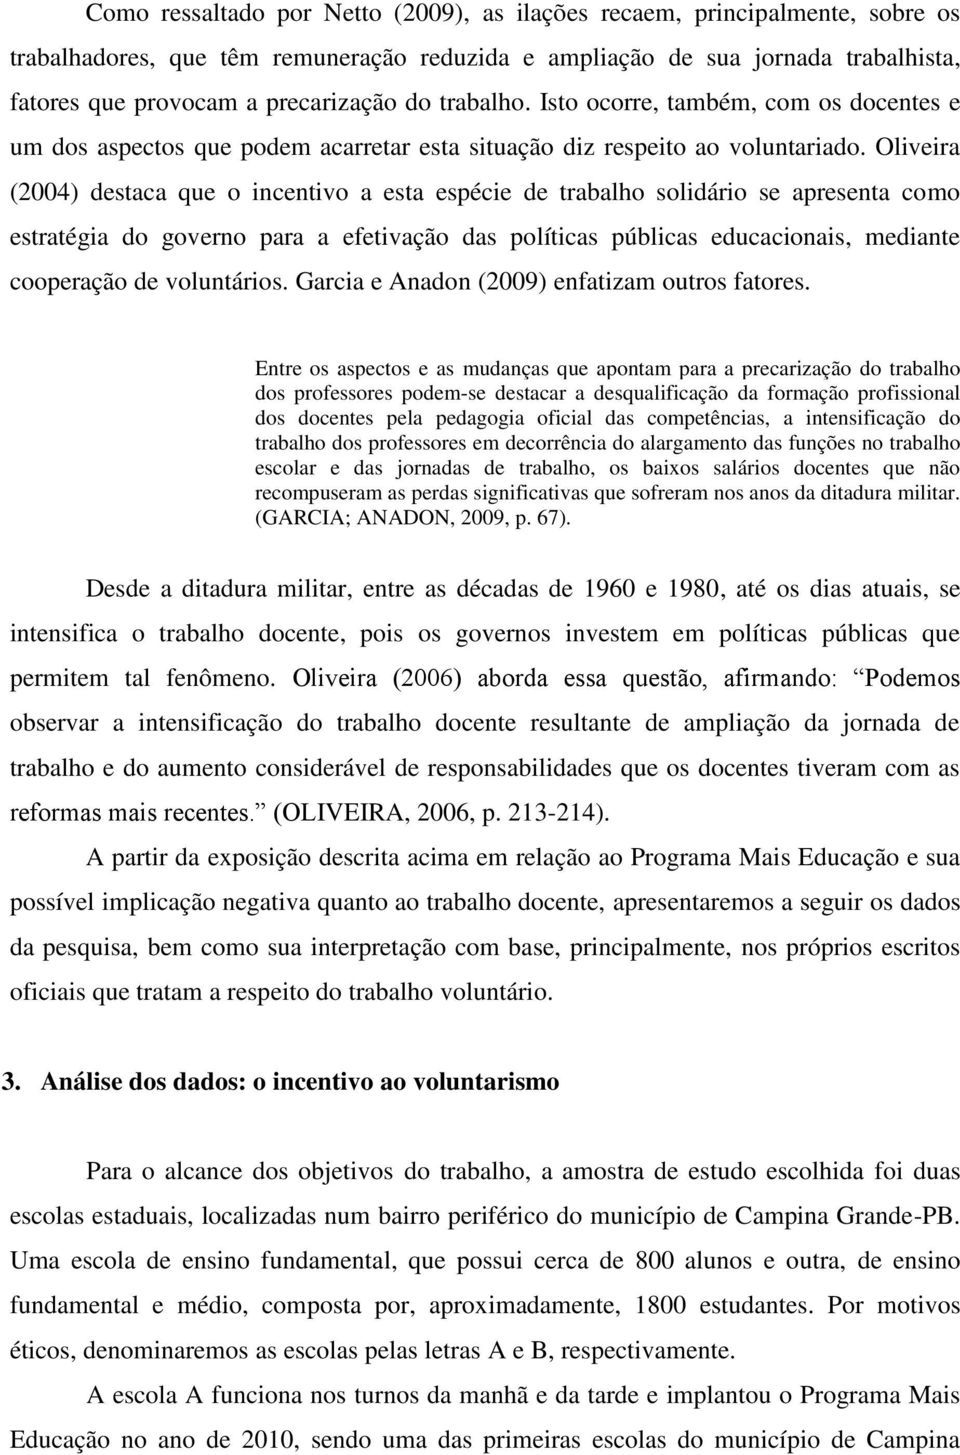 Oliveira (2004) destaca que o incentivo a esta espécie de trabalho solidário se apresenta como estratégia do governo para a efetivação das políticas públicas educacionais, mediante cooperação de